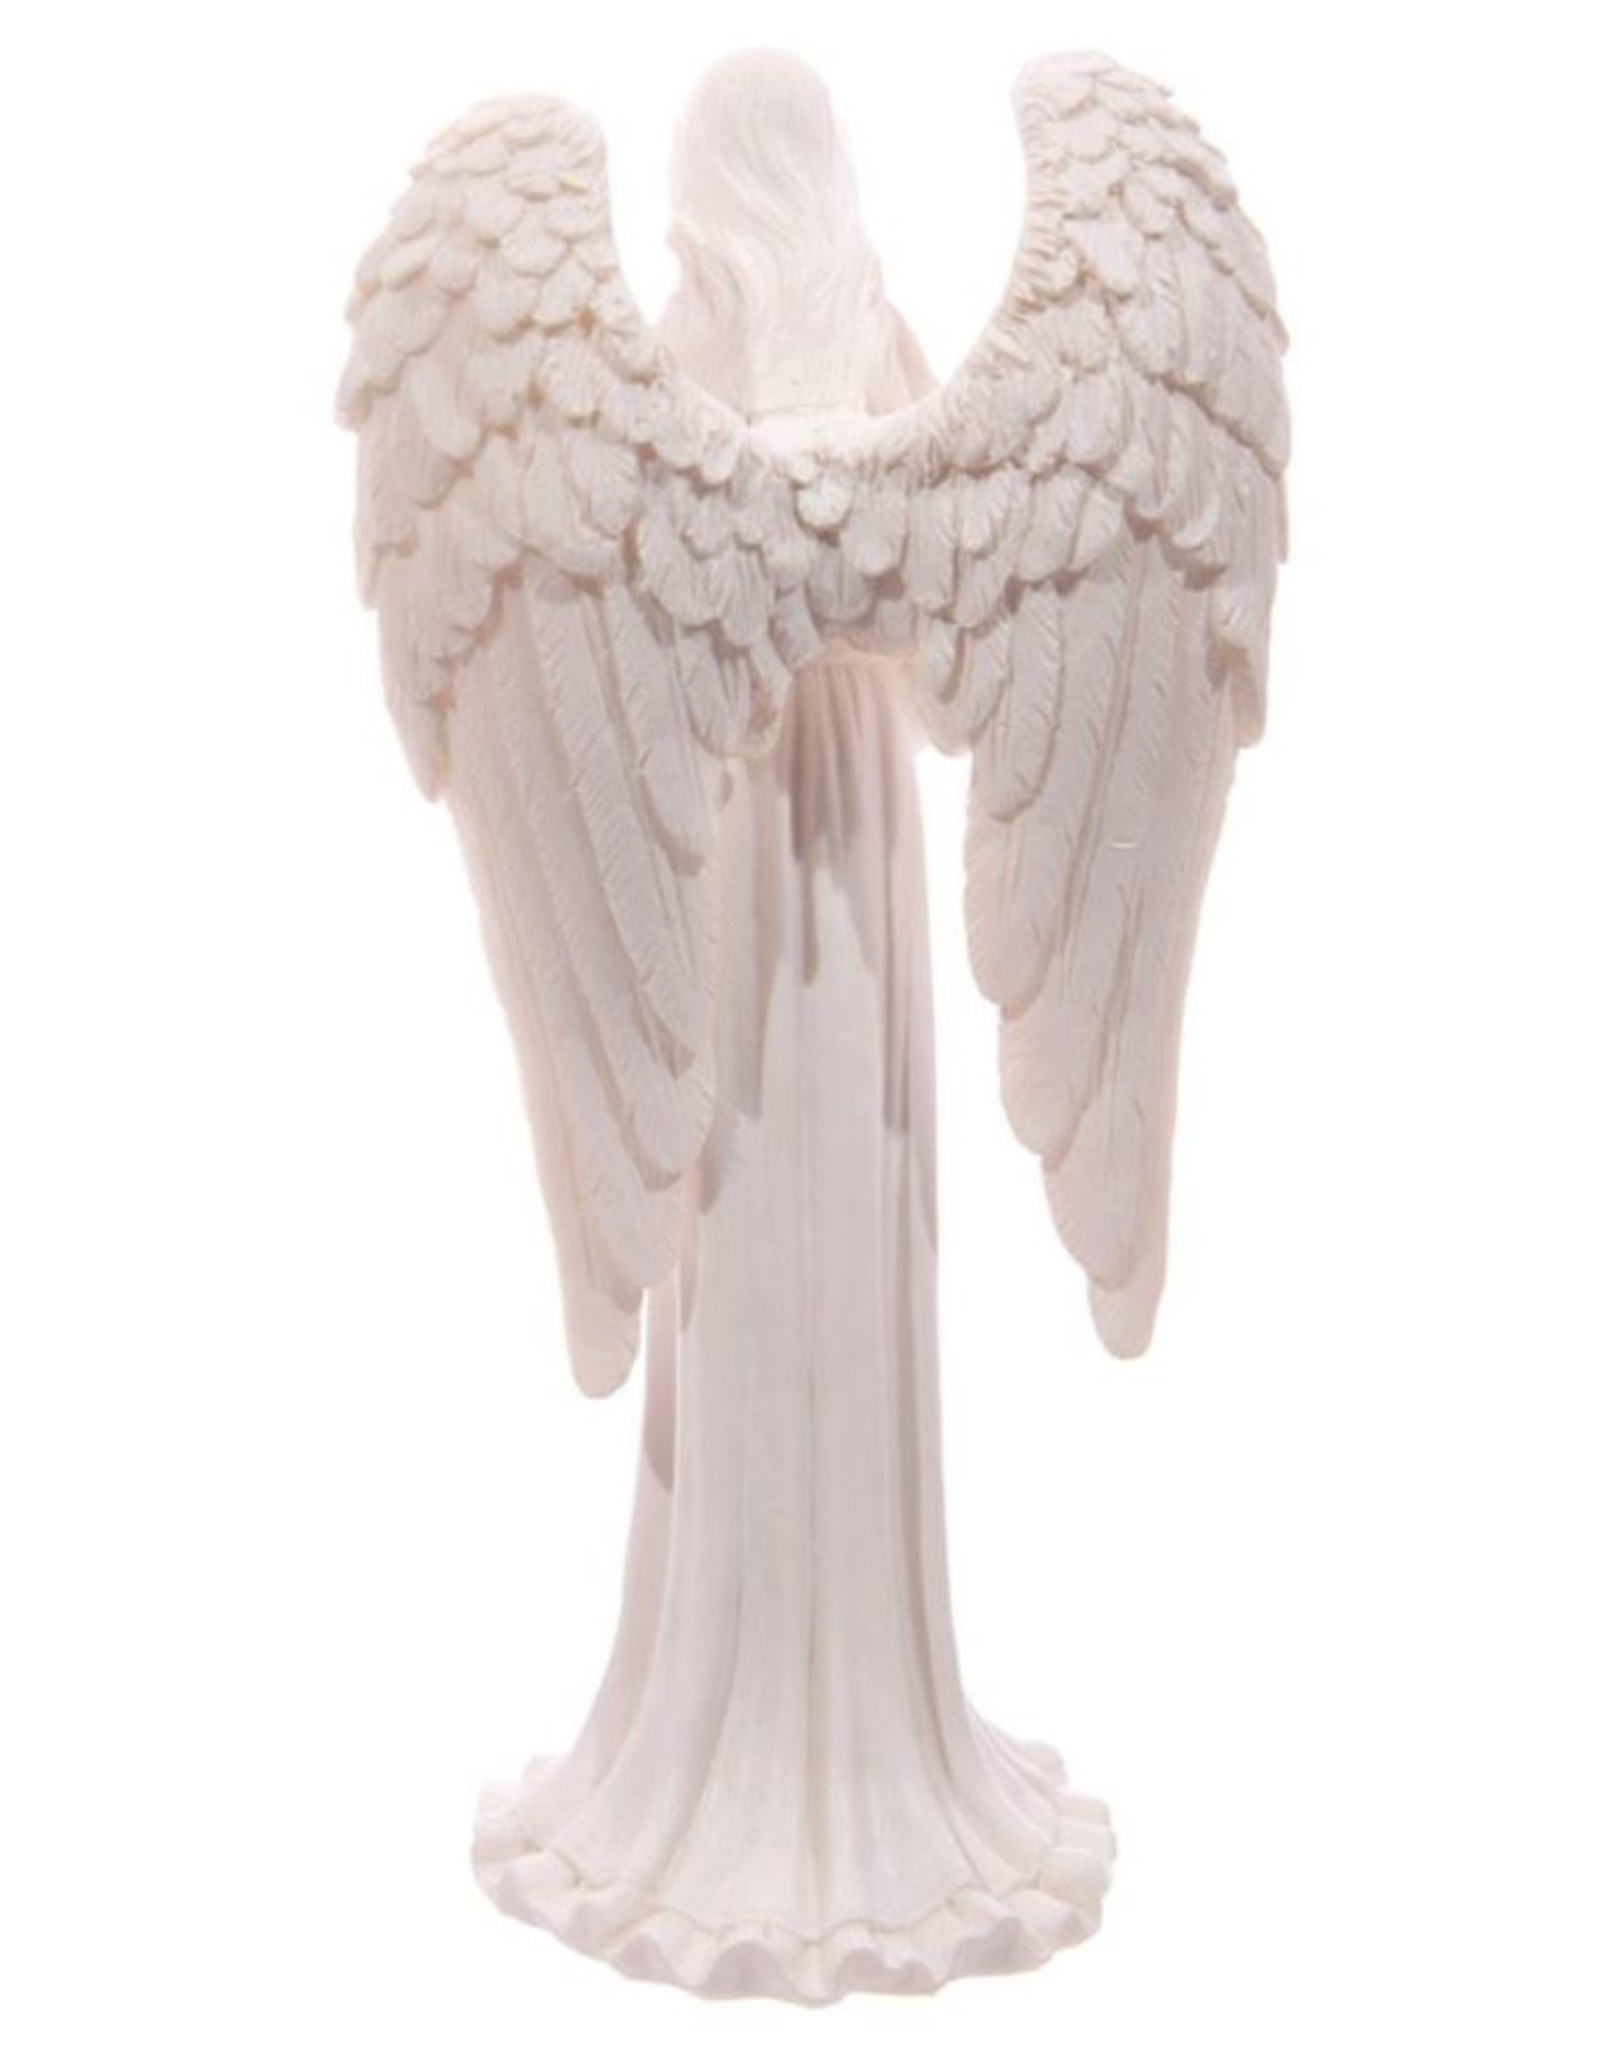 Trukado Giftware & Lifestyle - Witte Engel aan het bidden (staand) - 20cm